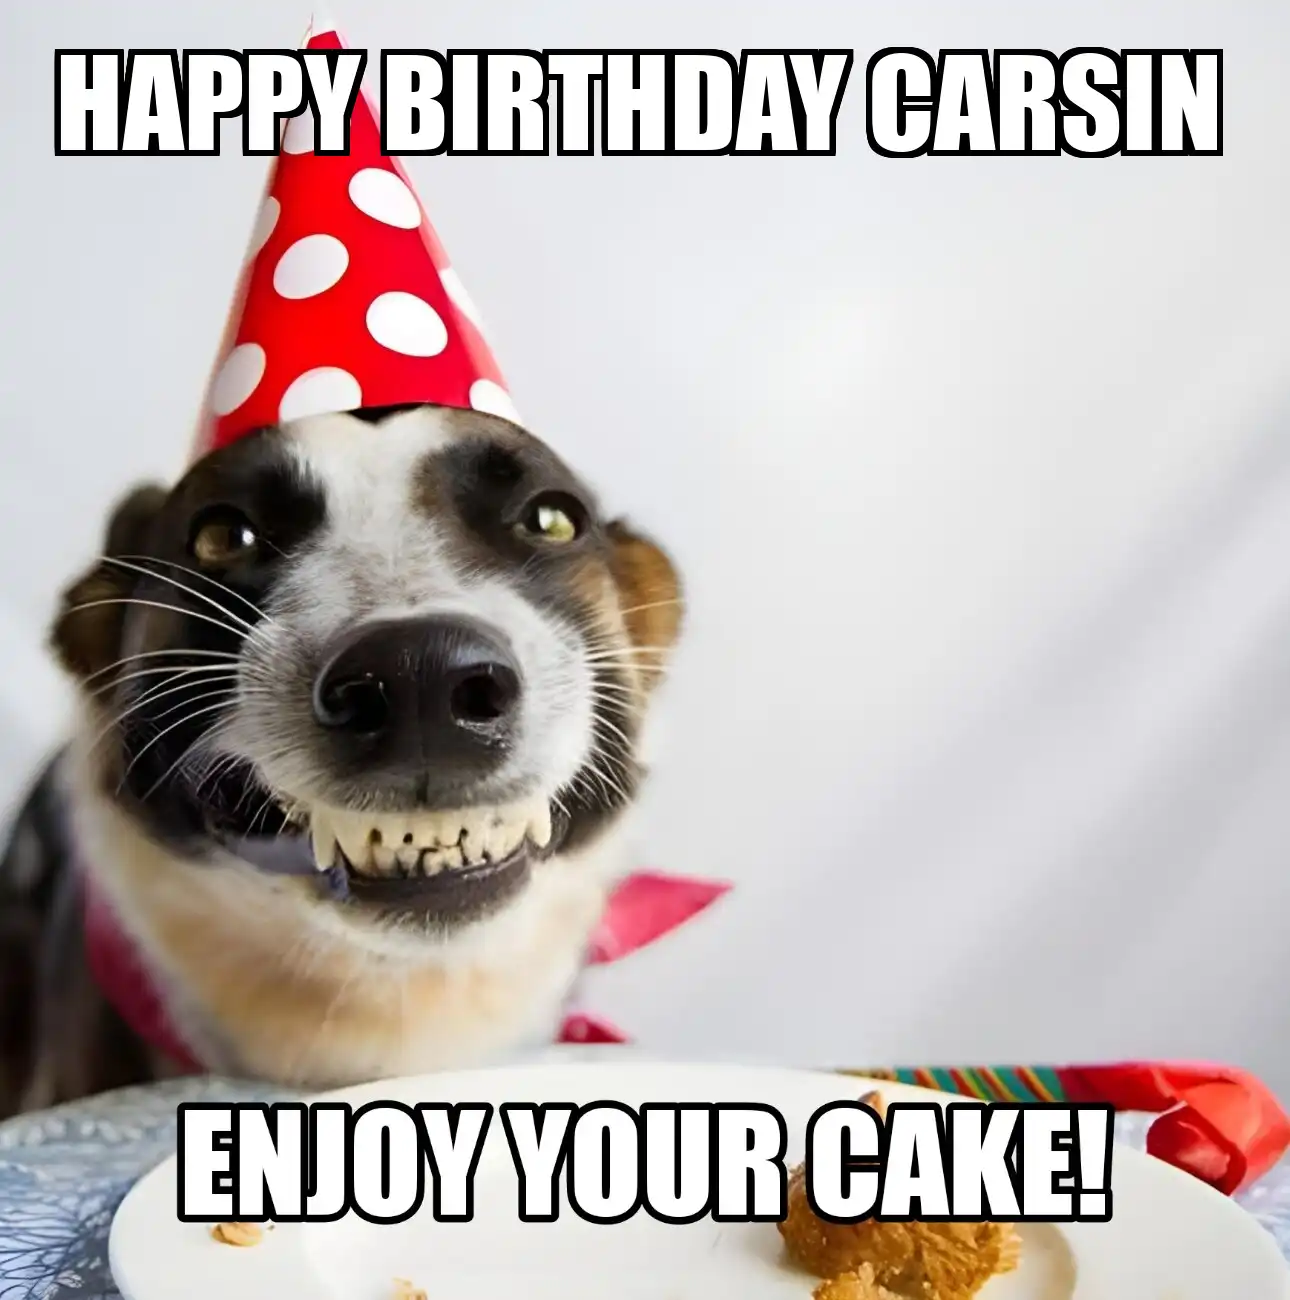 Happy Birthday Carsin Enjoy Your Cake Dog Meme